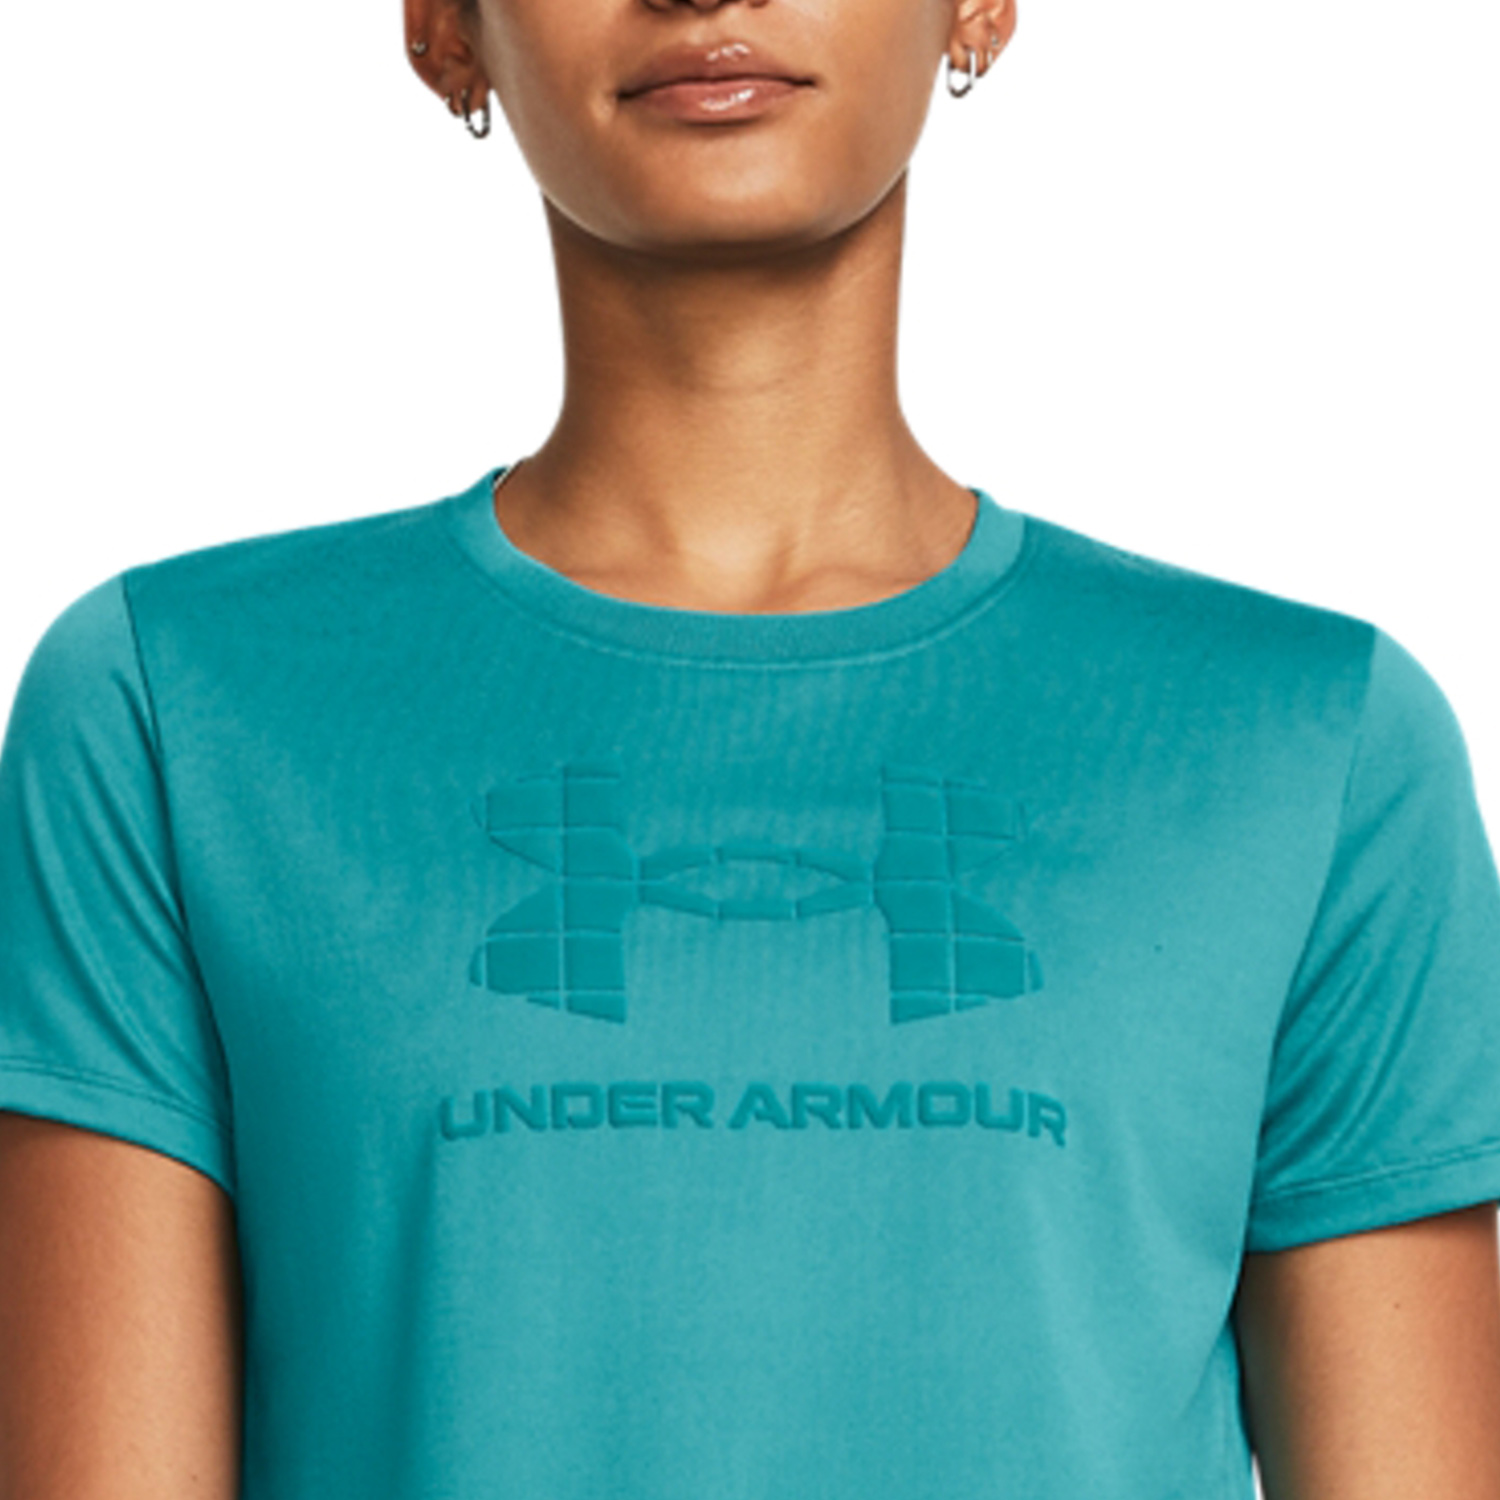 Under Armour Tech Camiseta - Circuit Teal/Coastal Teal